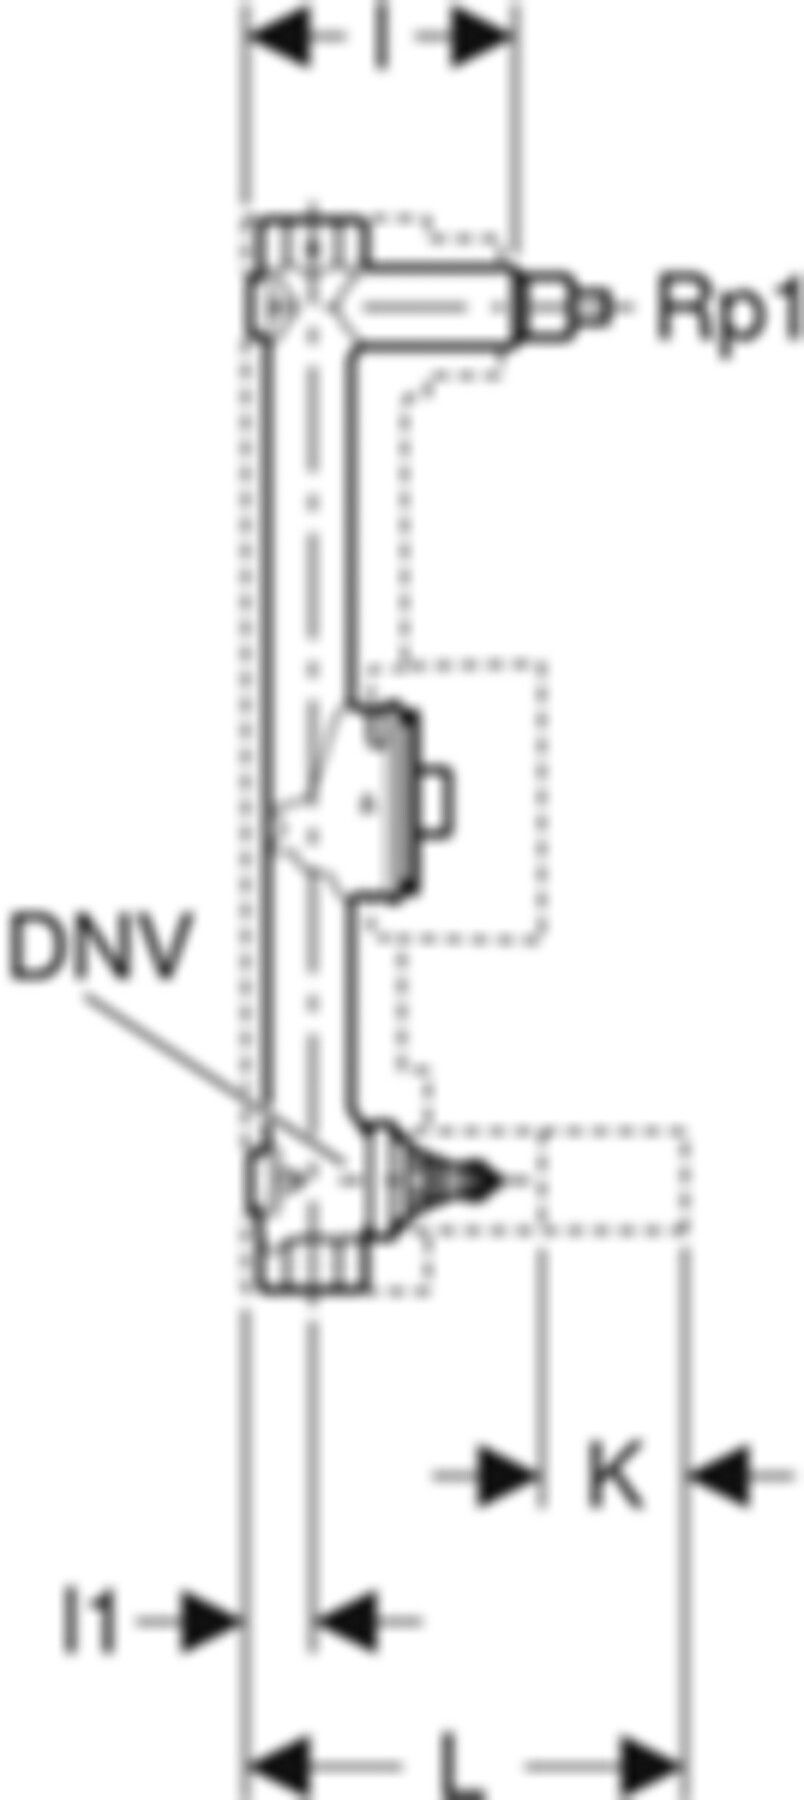 Wasserzählerstrecke 3/4" 603.098.21.1 mit UP-Ventil und Anschluss-T-Stück - Geberit Systemventile / Armaturen